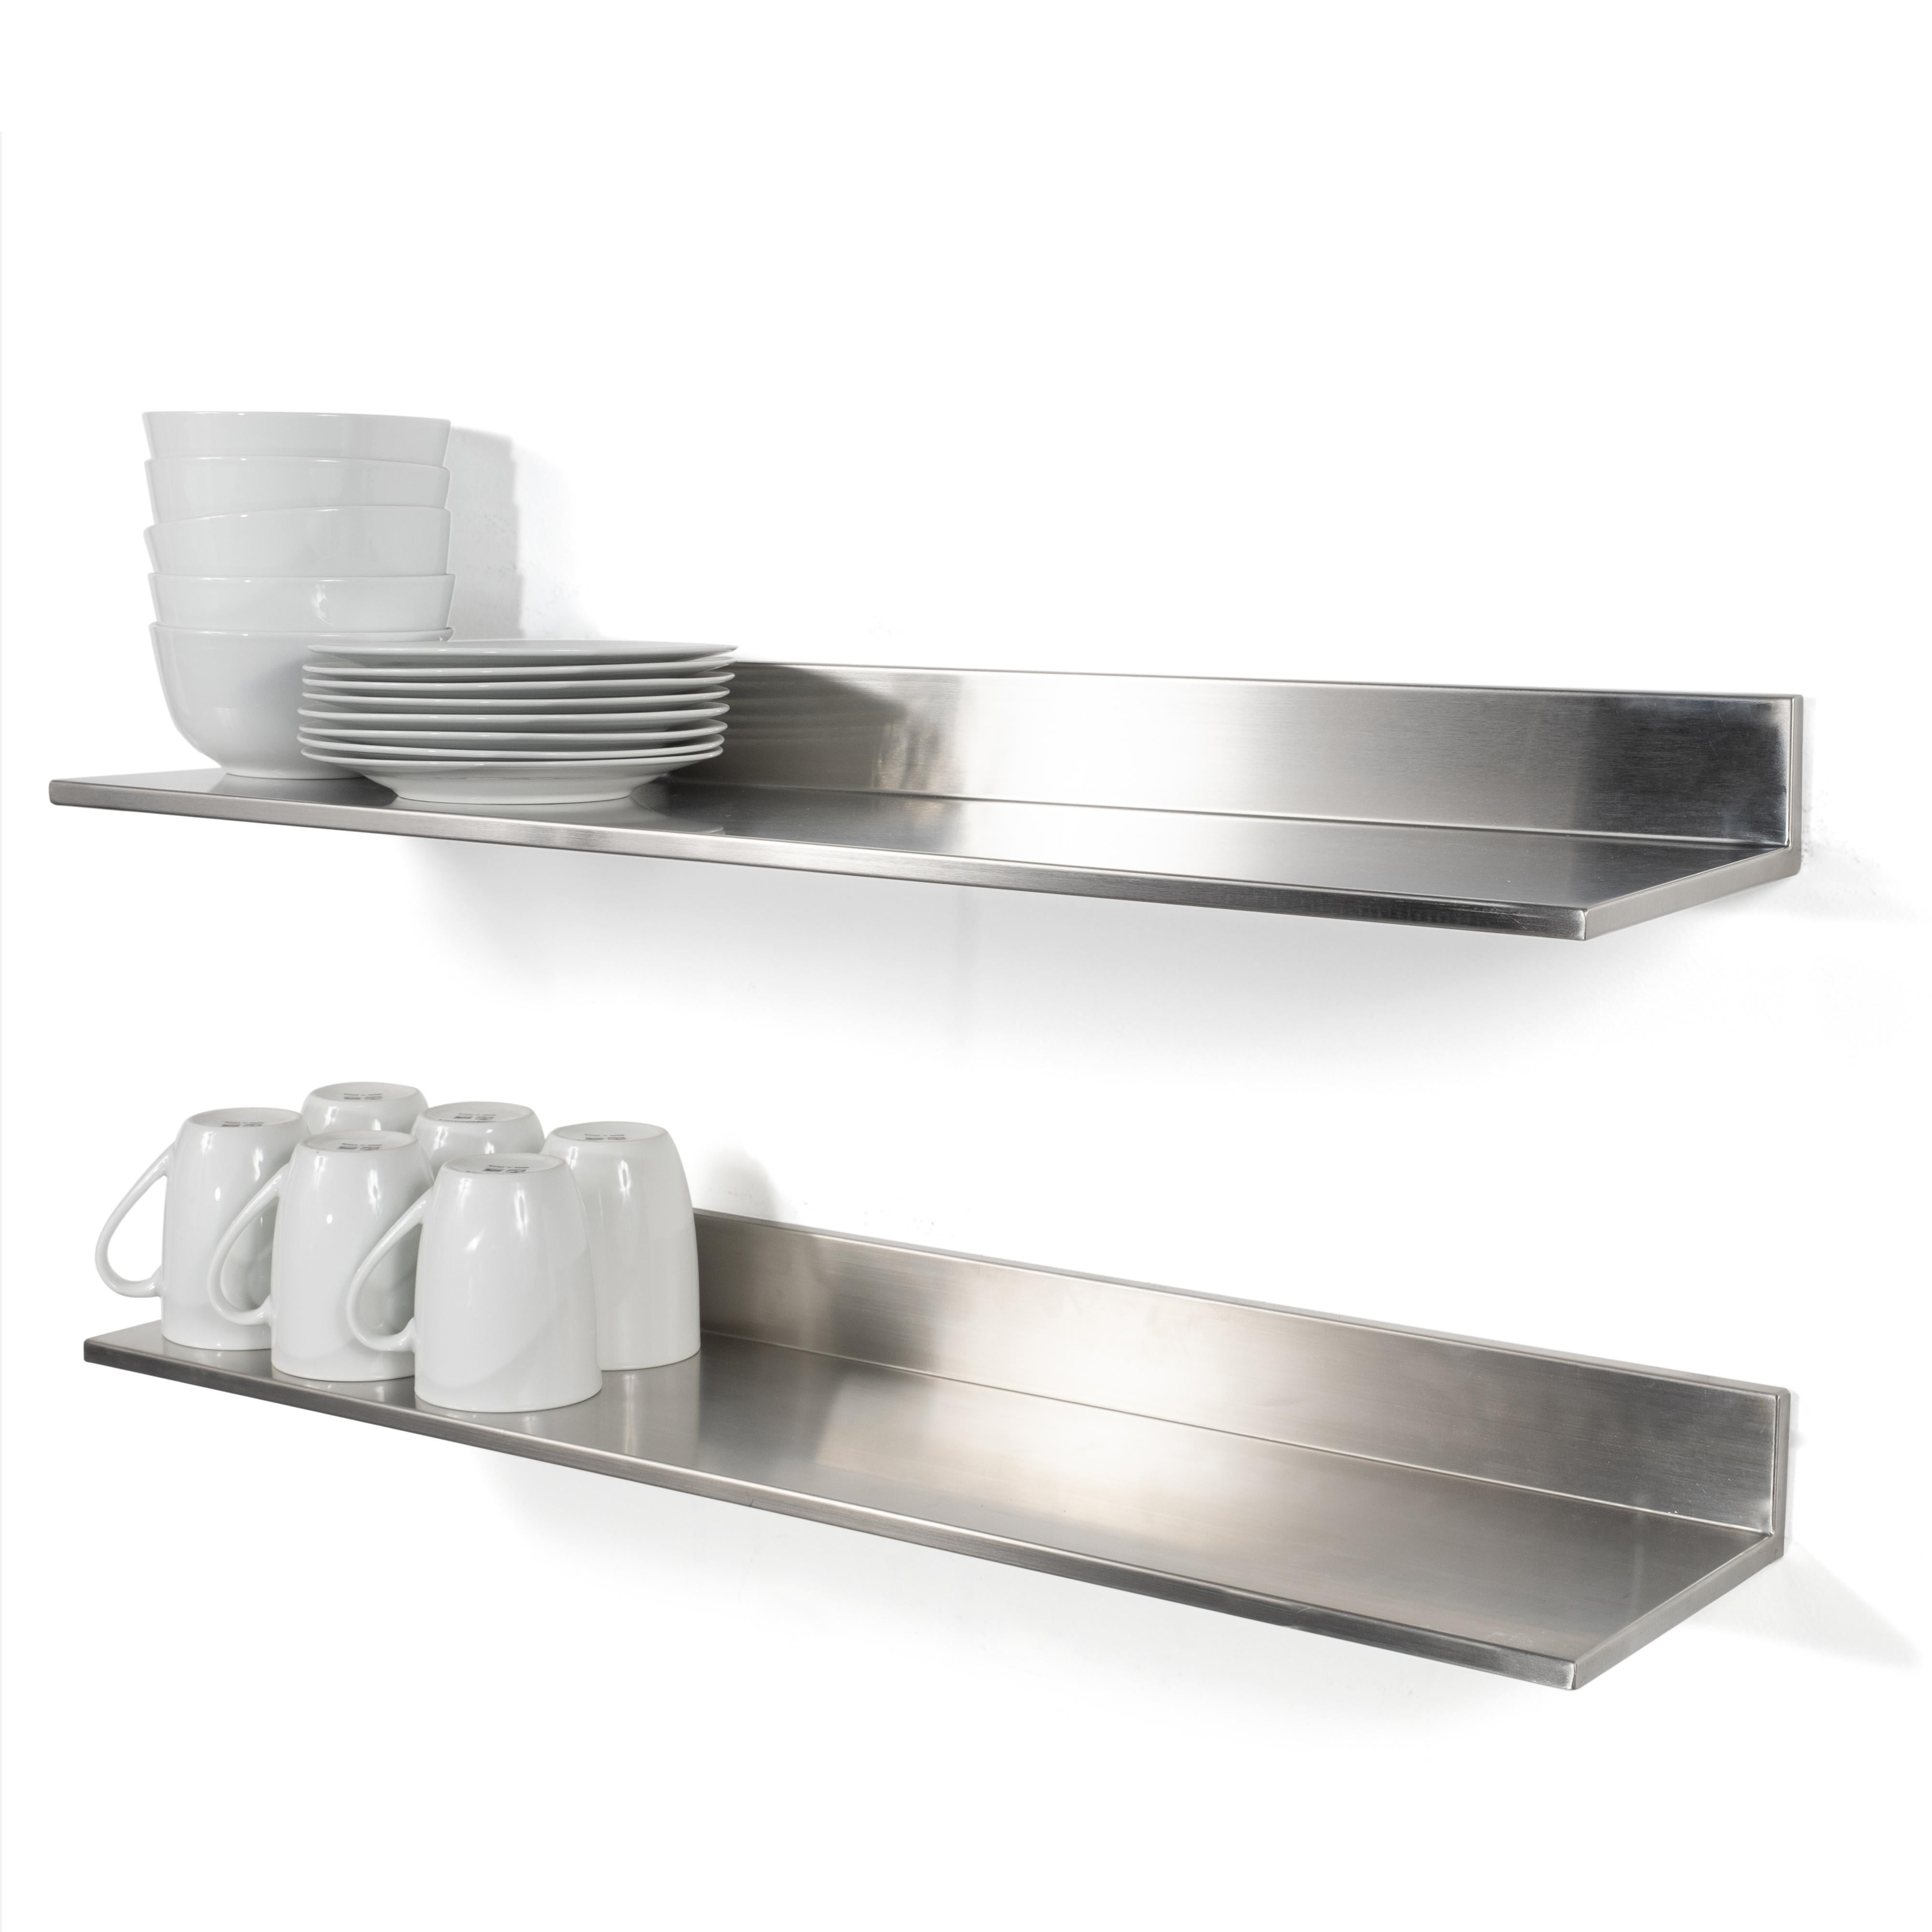 Stainless Steel Kitchen Shelves - Foter